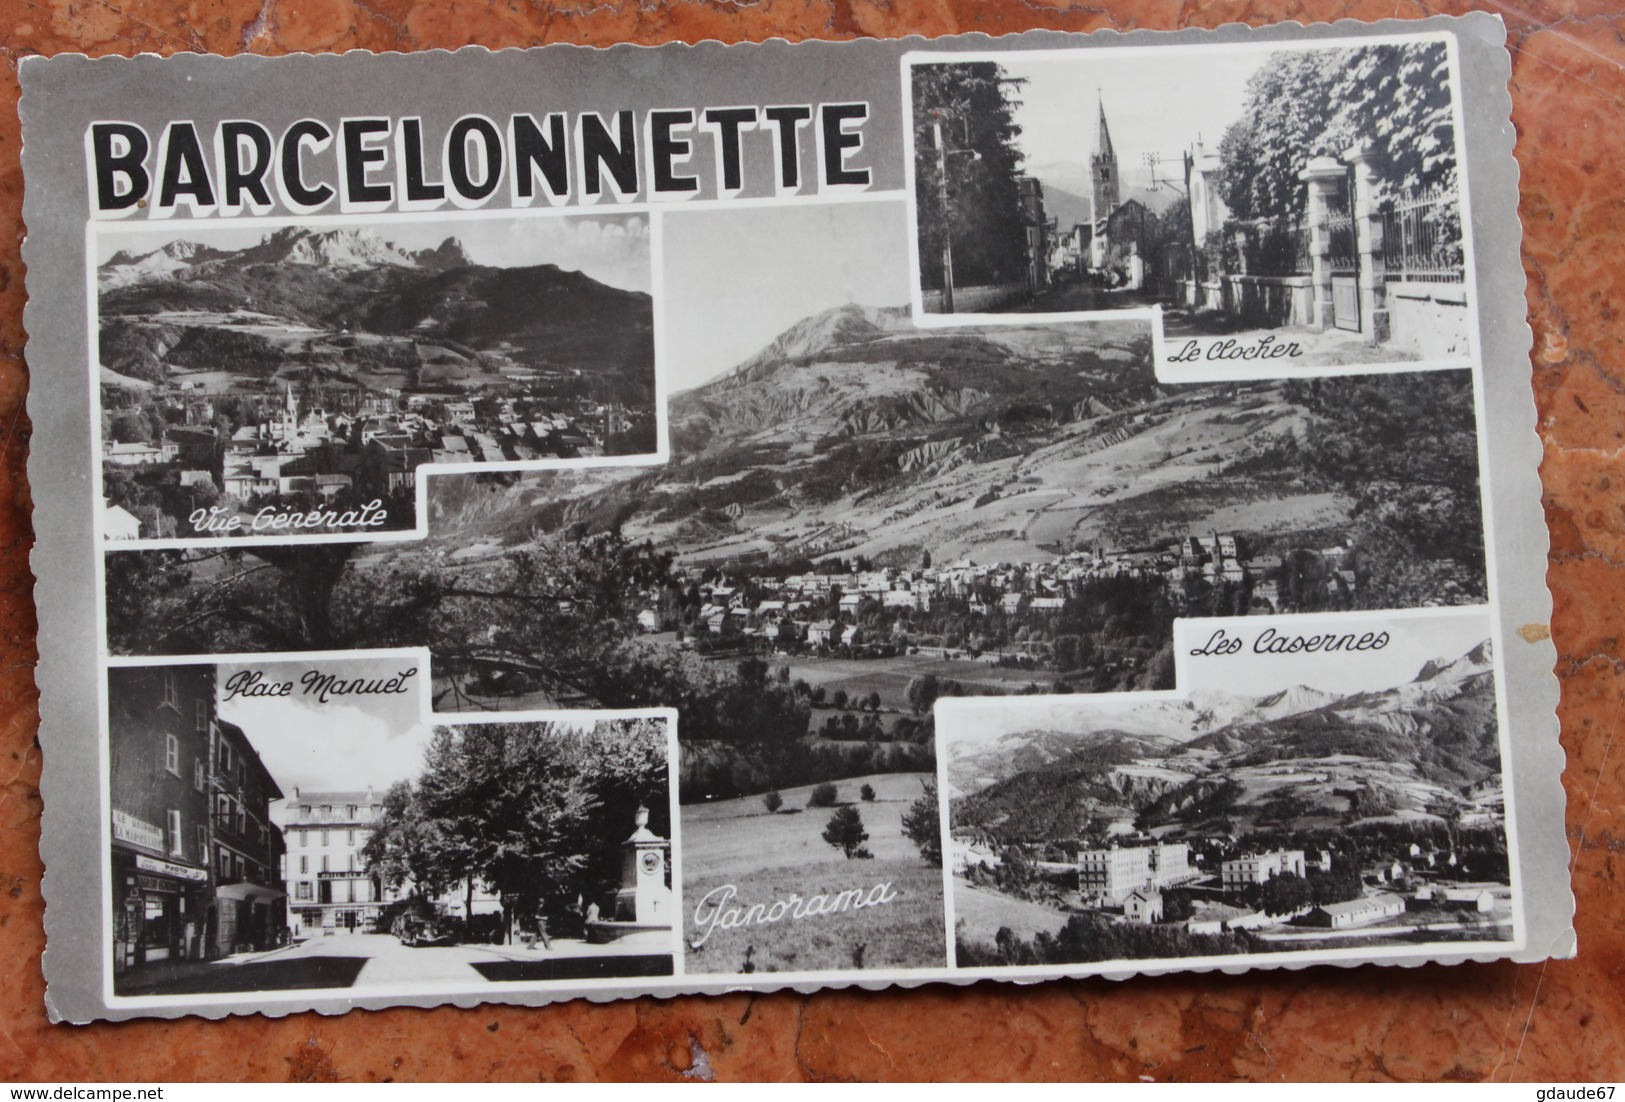 BARCELONNETTE (04) - PANORAMA / CASERNES / CLOCHER / VUE GENERALE / PLACE MANUEL - Barcelonnette